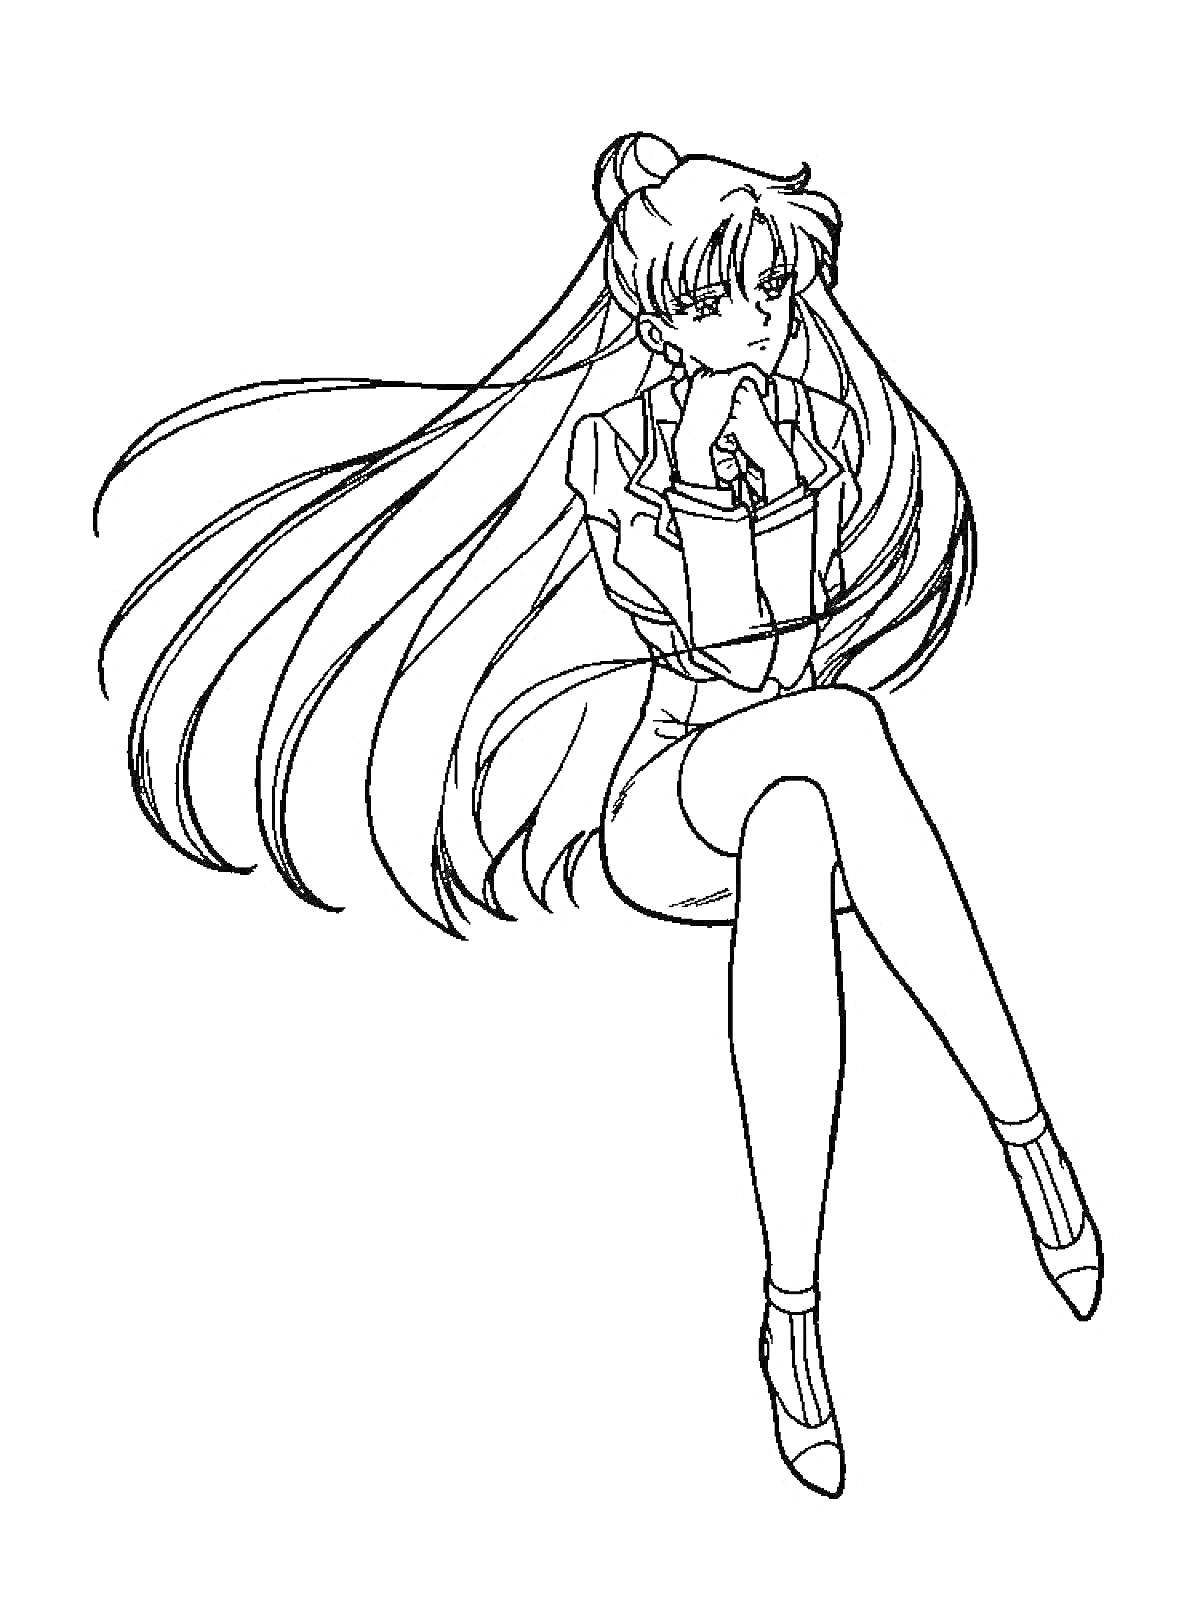 Раскраска Девушка аниме с длинными волосами и в школьной форме сидит, положив руку на подбородок